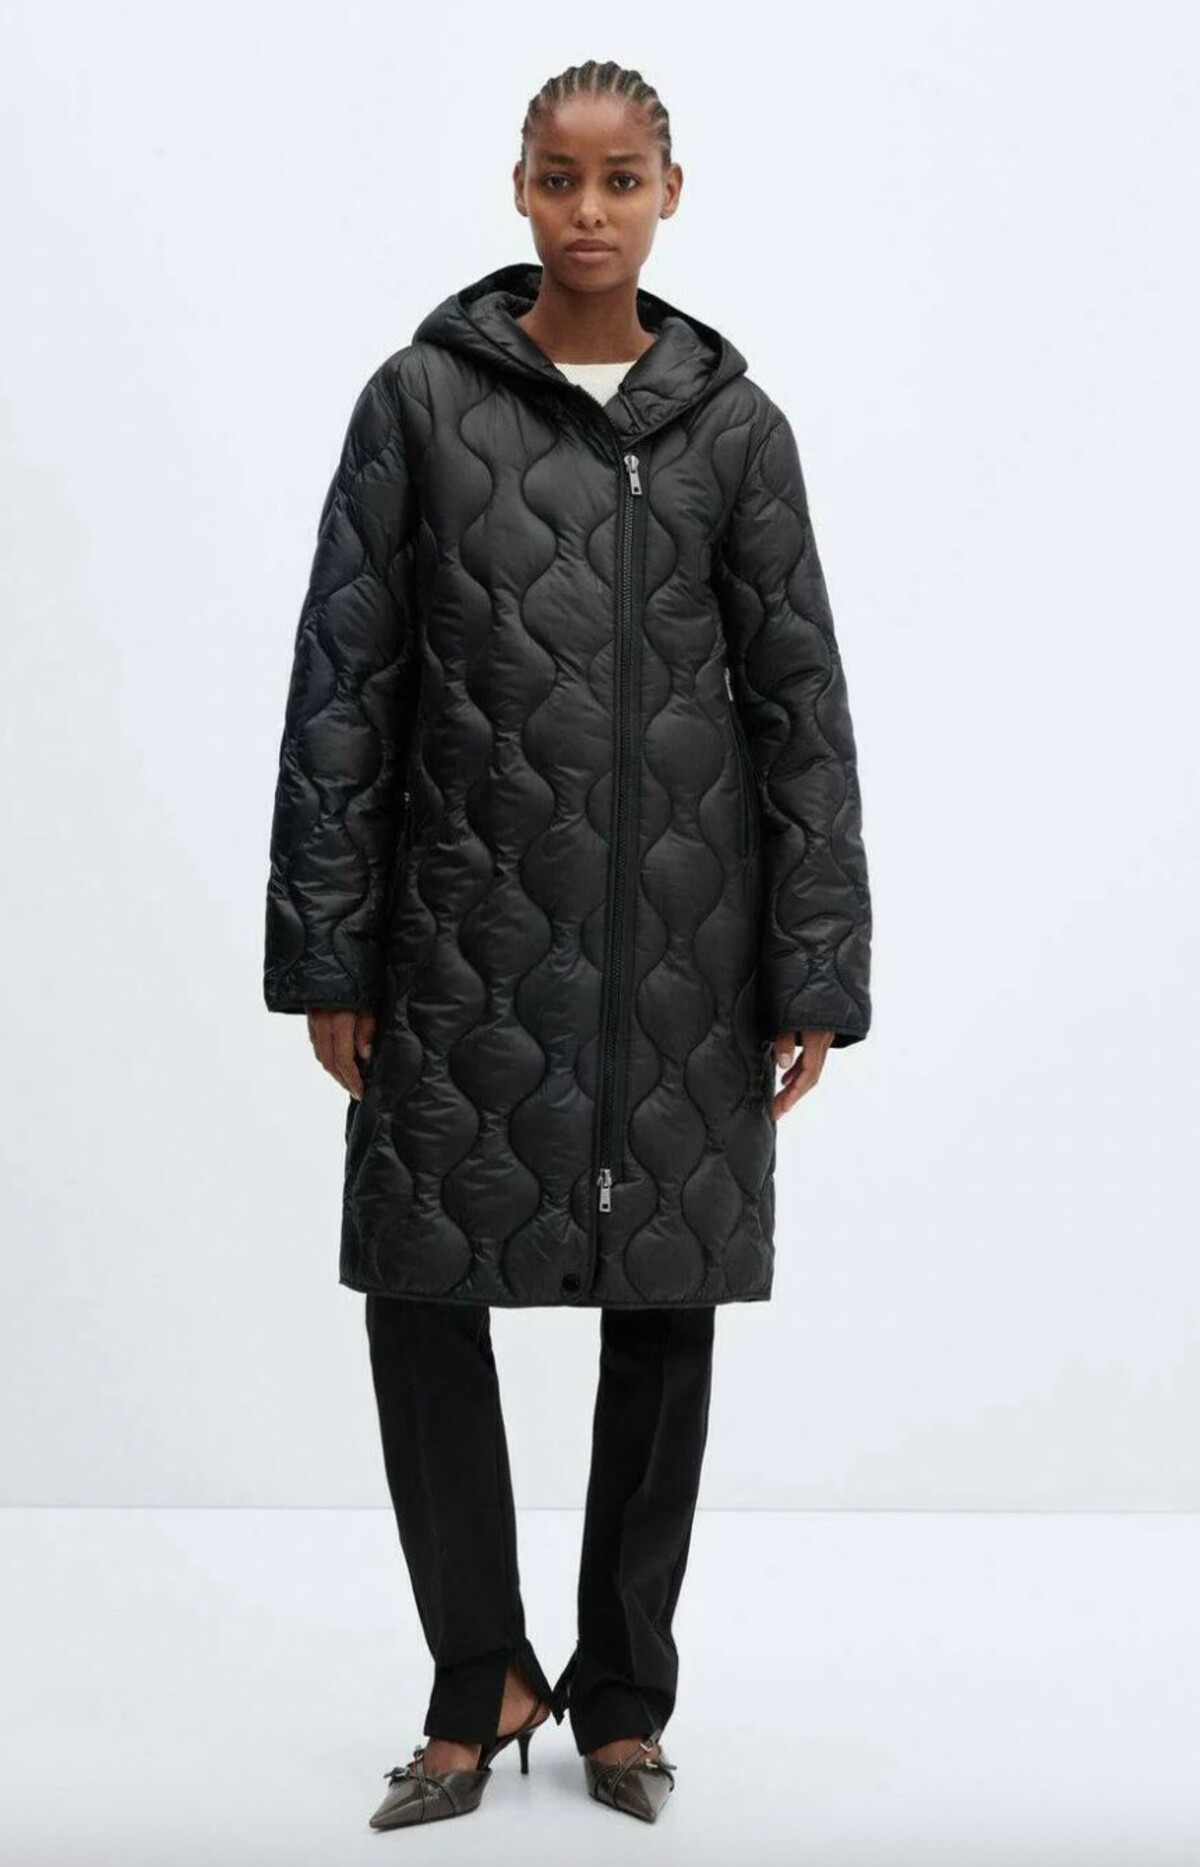 Prešívaný kabát s golierom od značky Mango kúpiš za 99,99 eura.